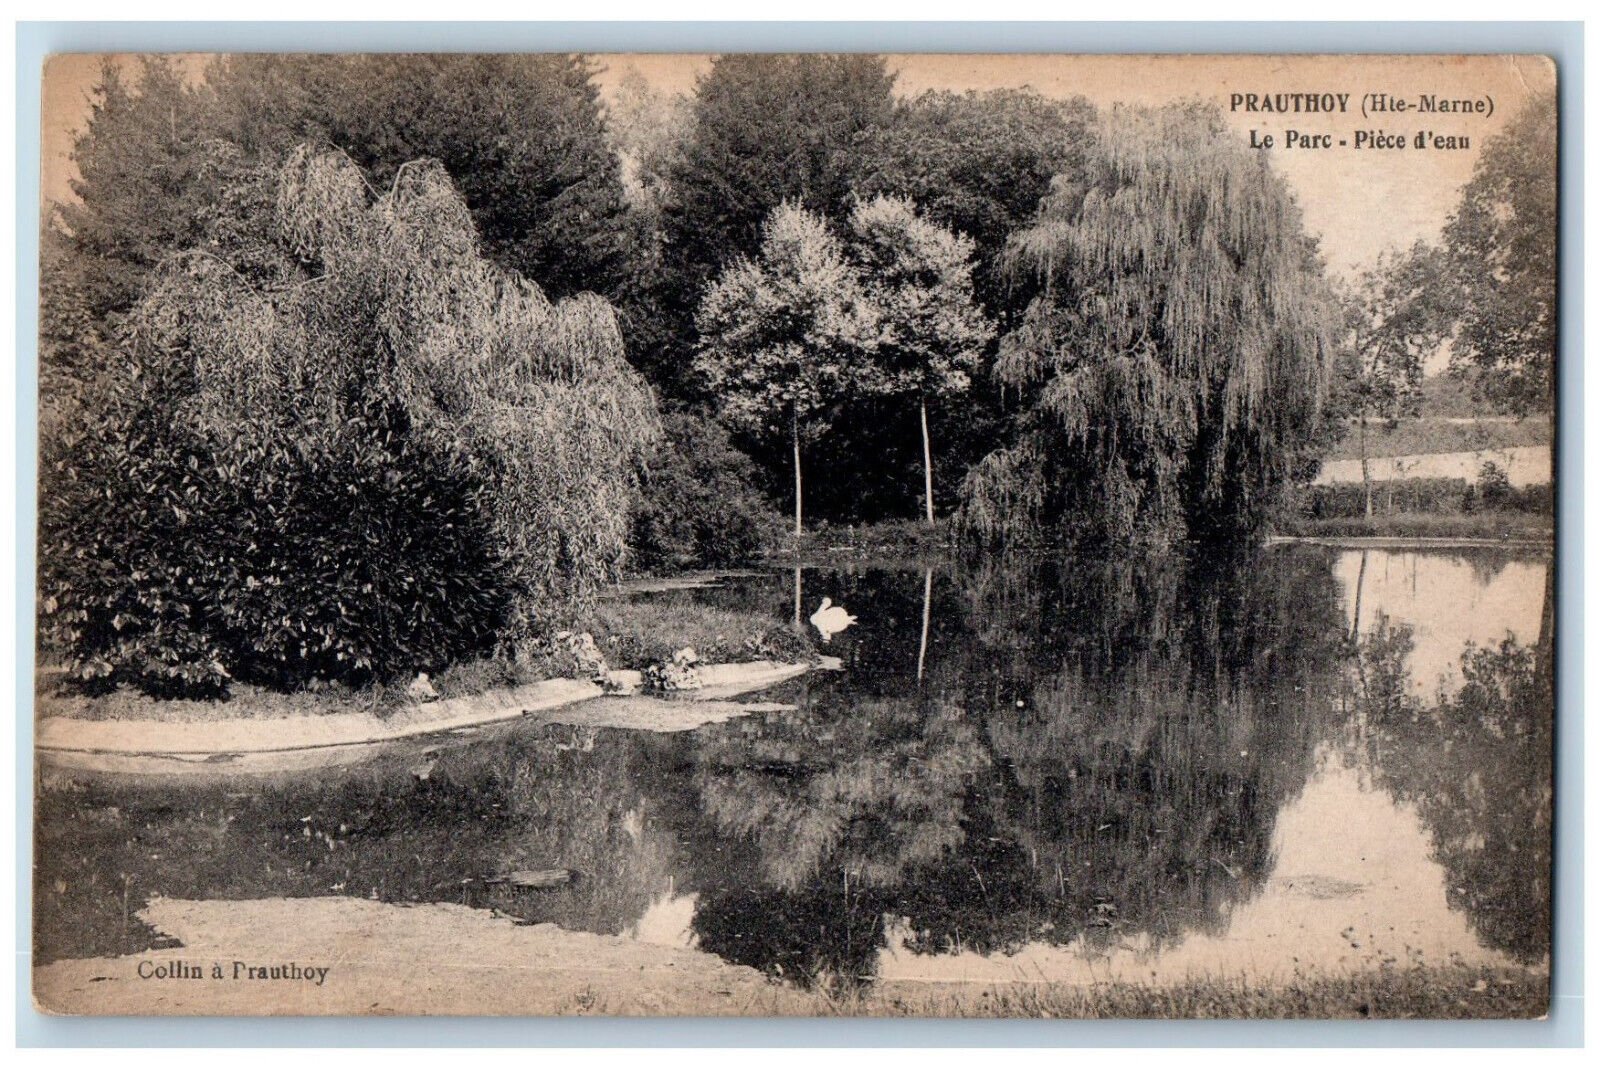 Prauthoy (Hte-Marne) France Postcard Le Parc Plece d'Eau c1910 Unposted Antique